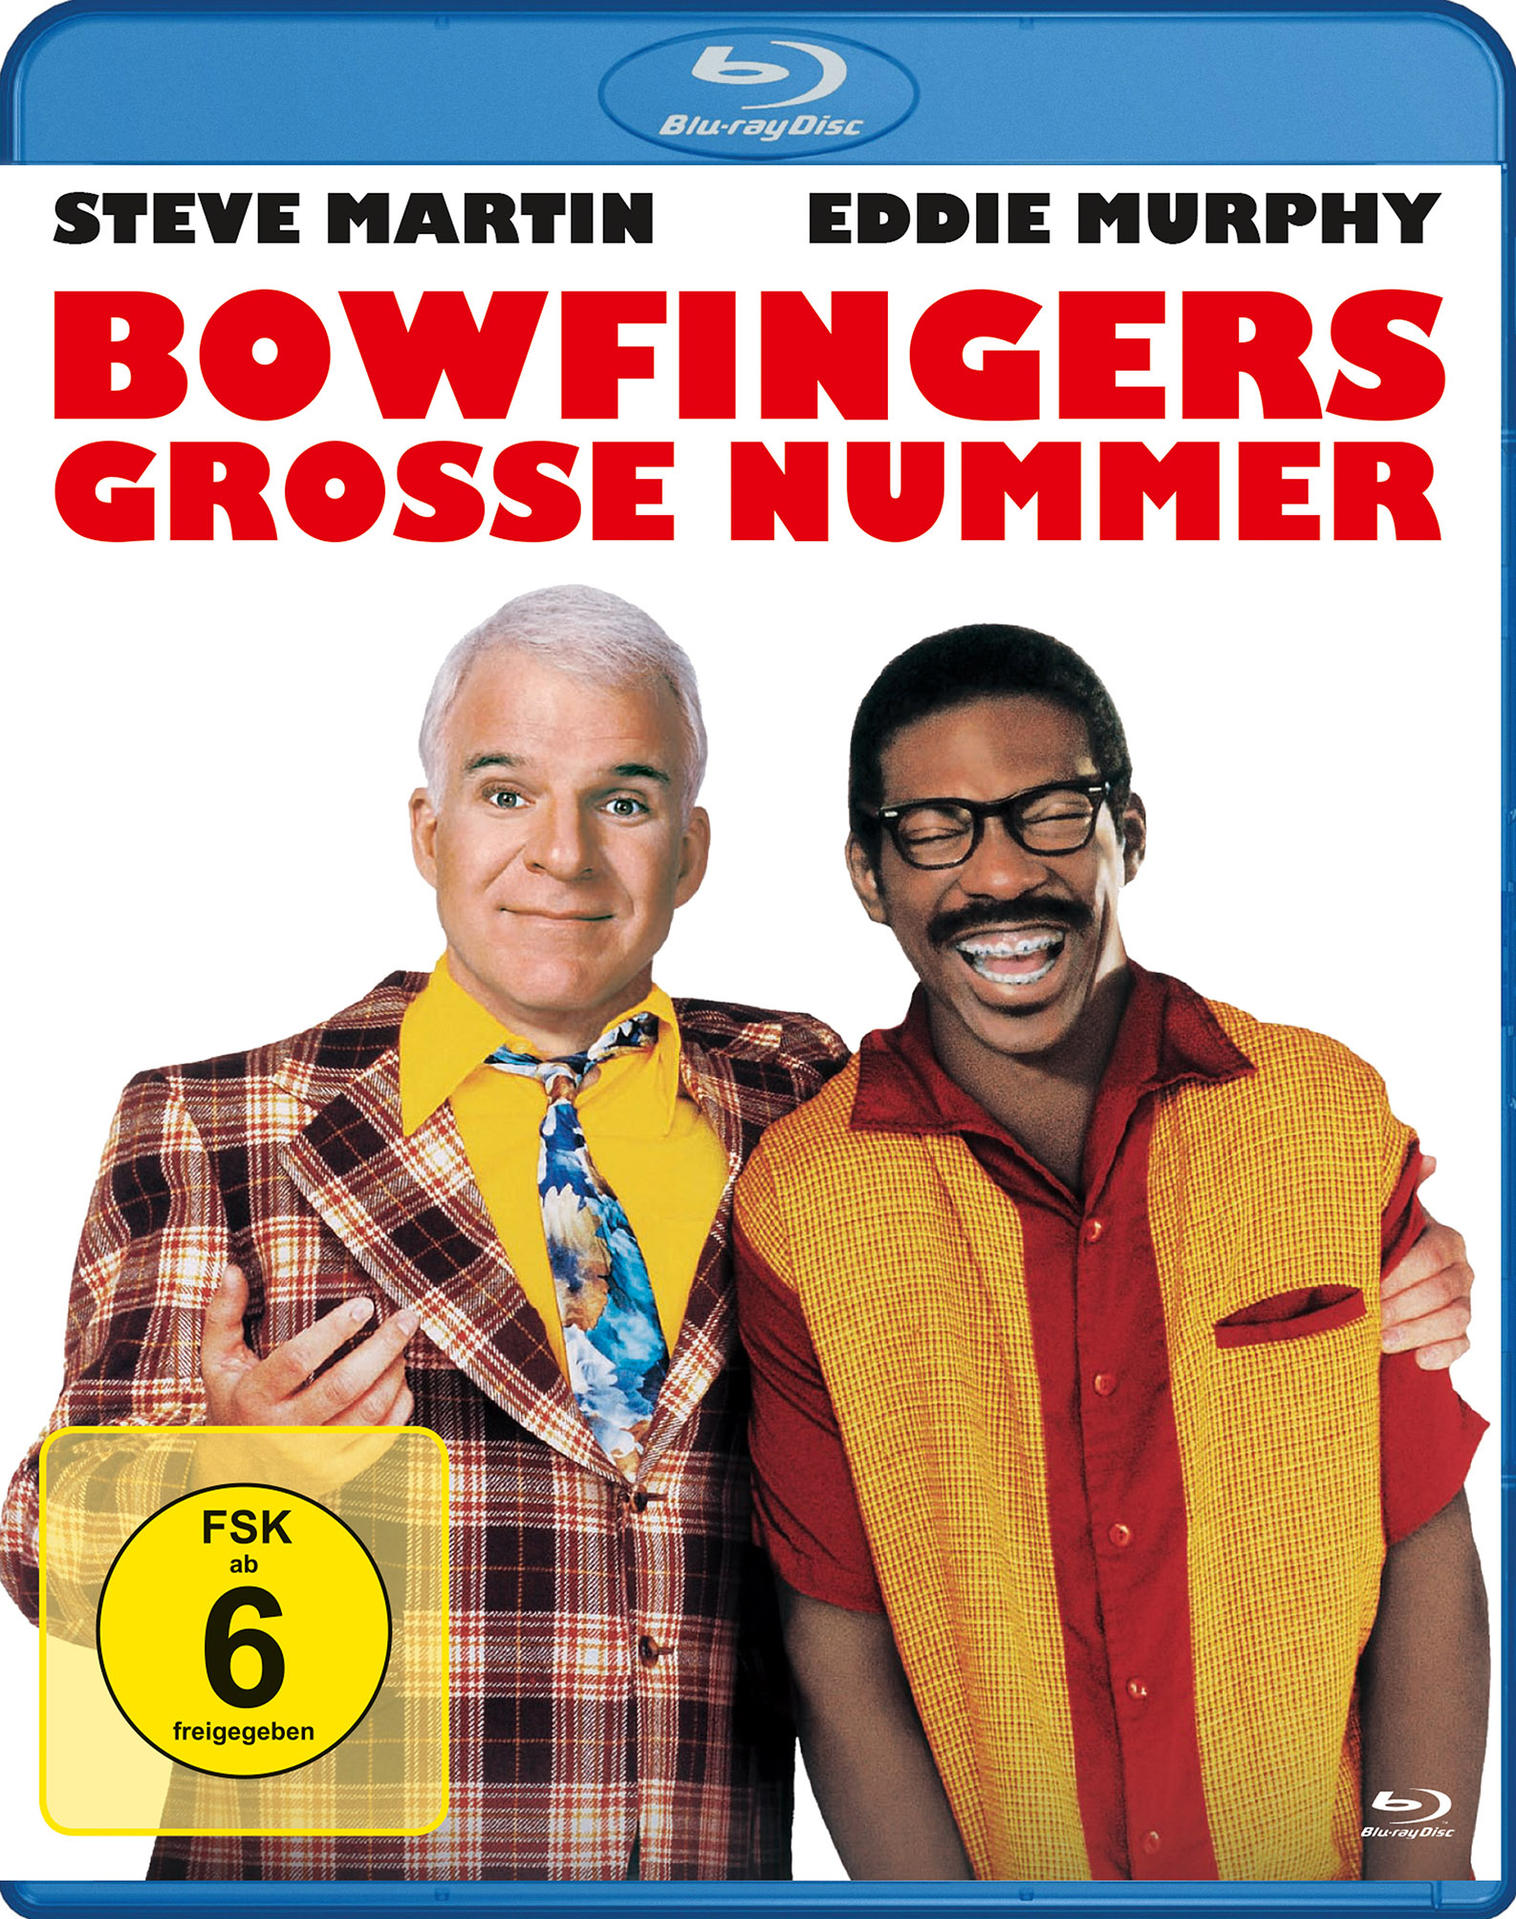 Blu-ray große Nummer / Life Bowfingers